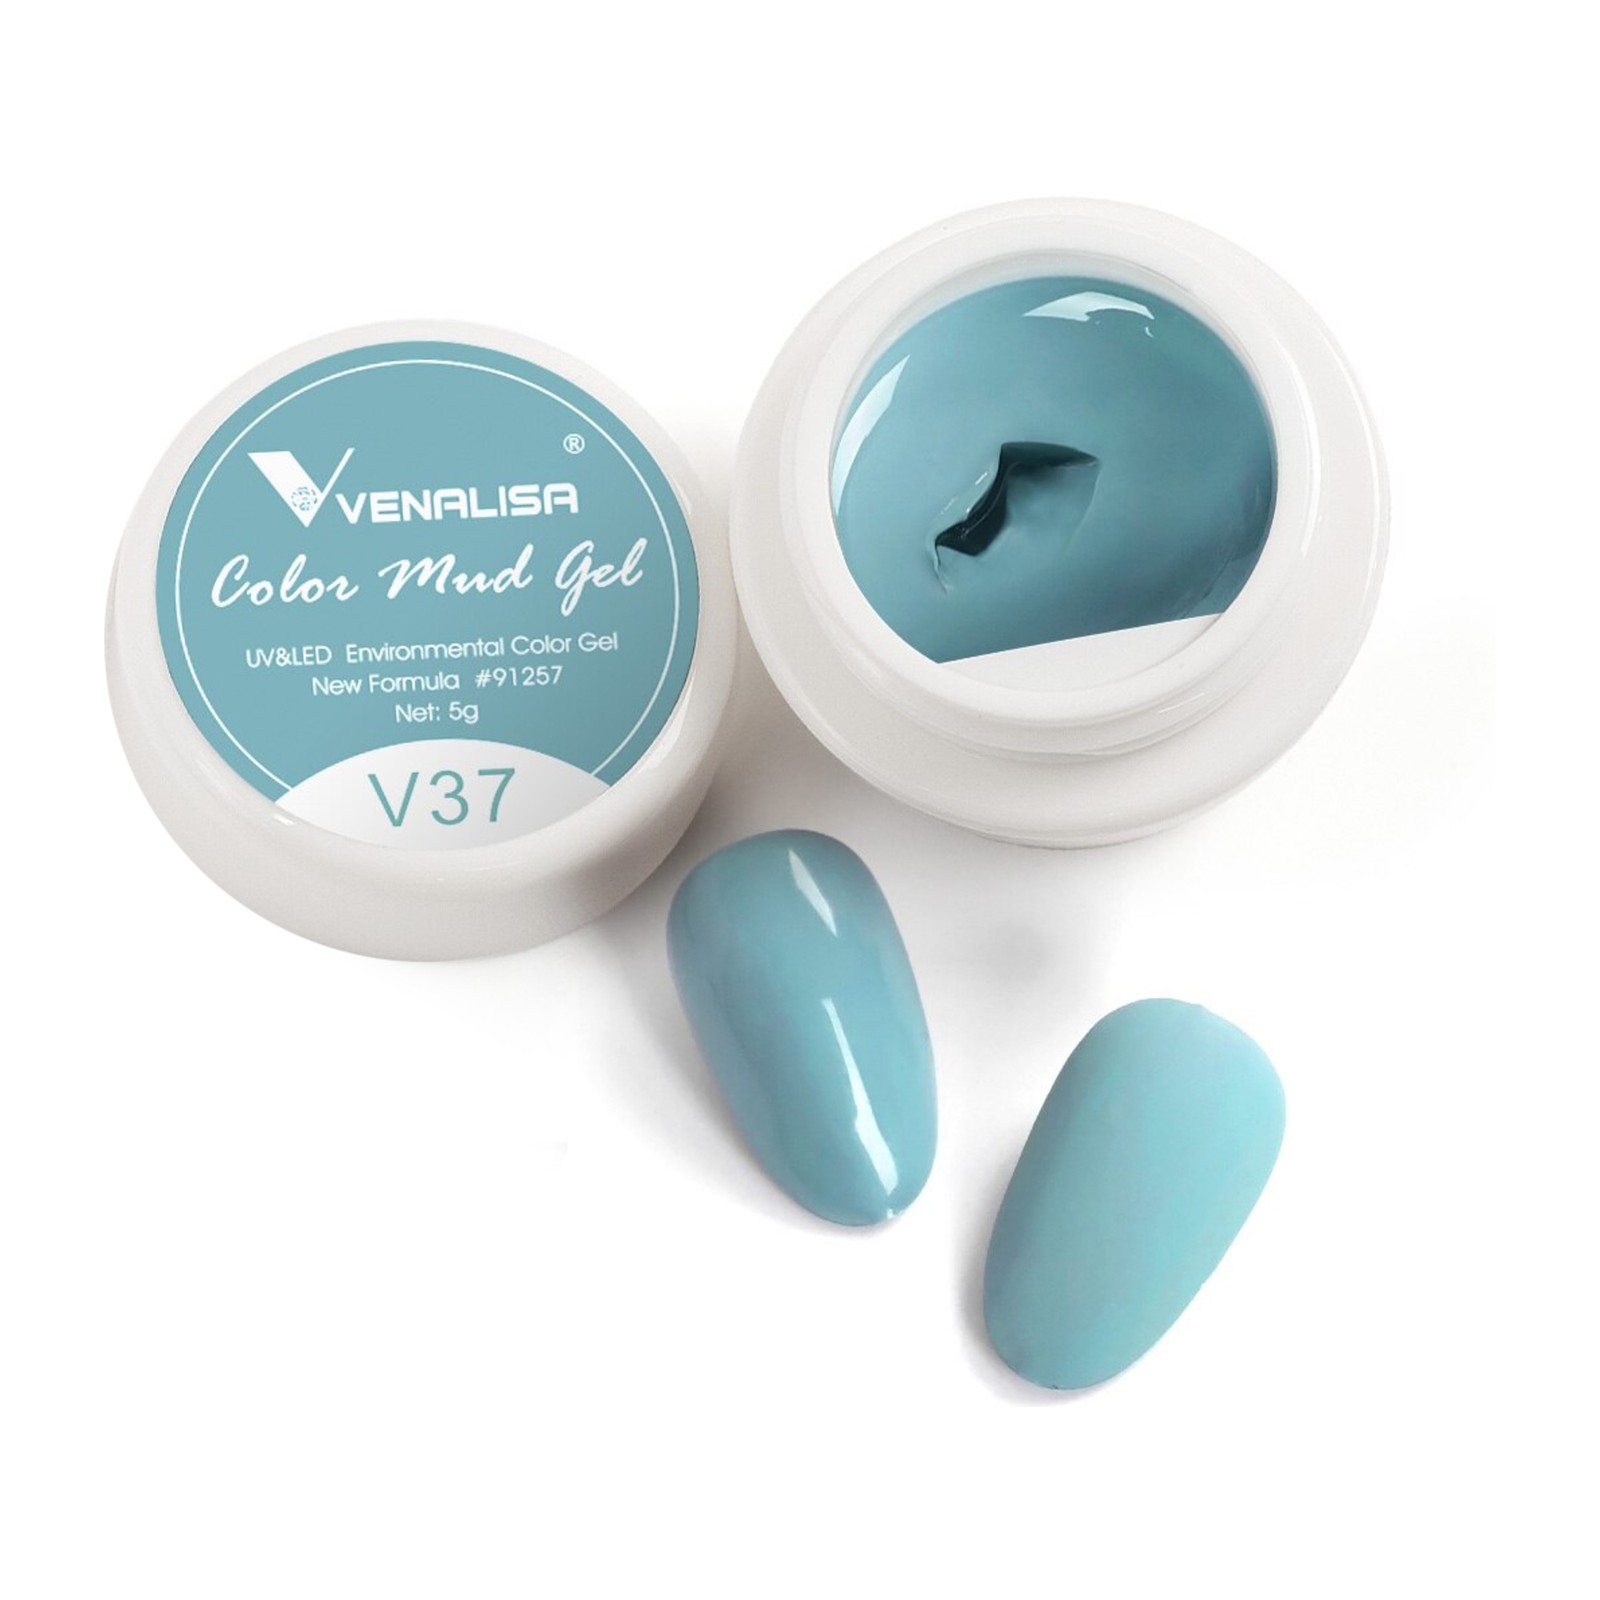 Venalisa -  V37 -  5ml